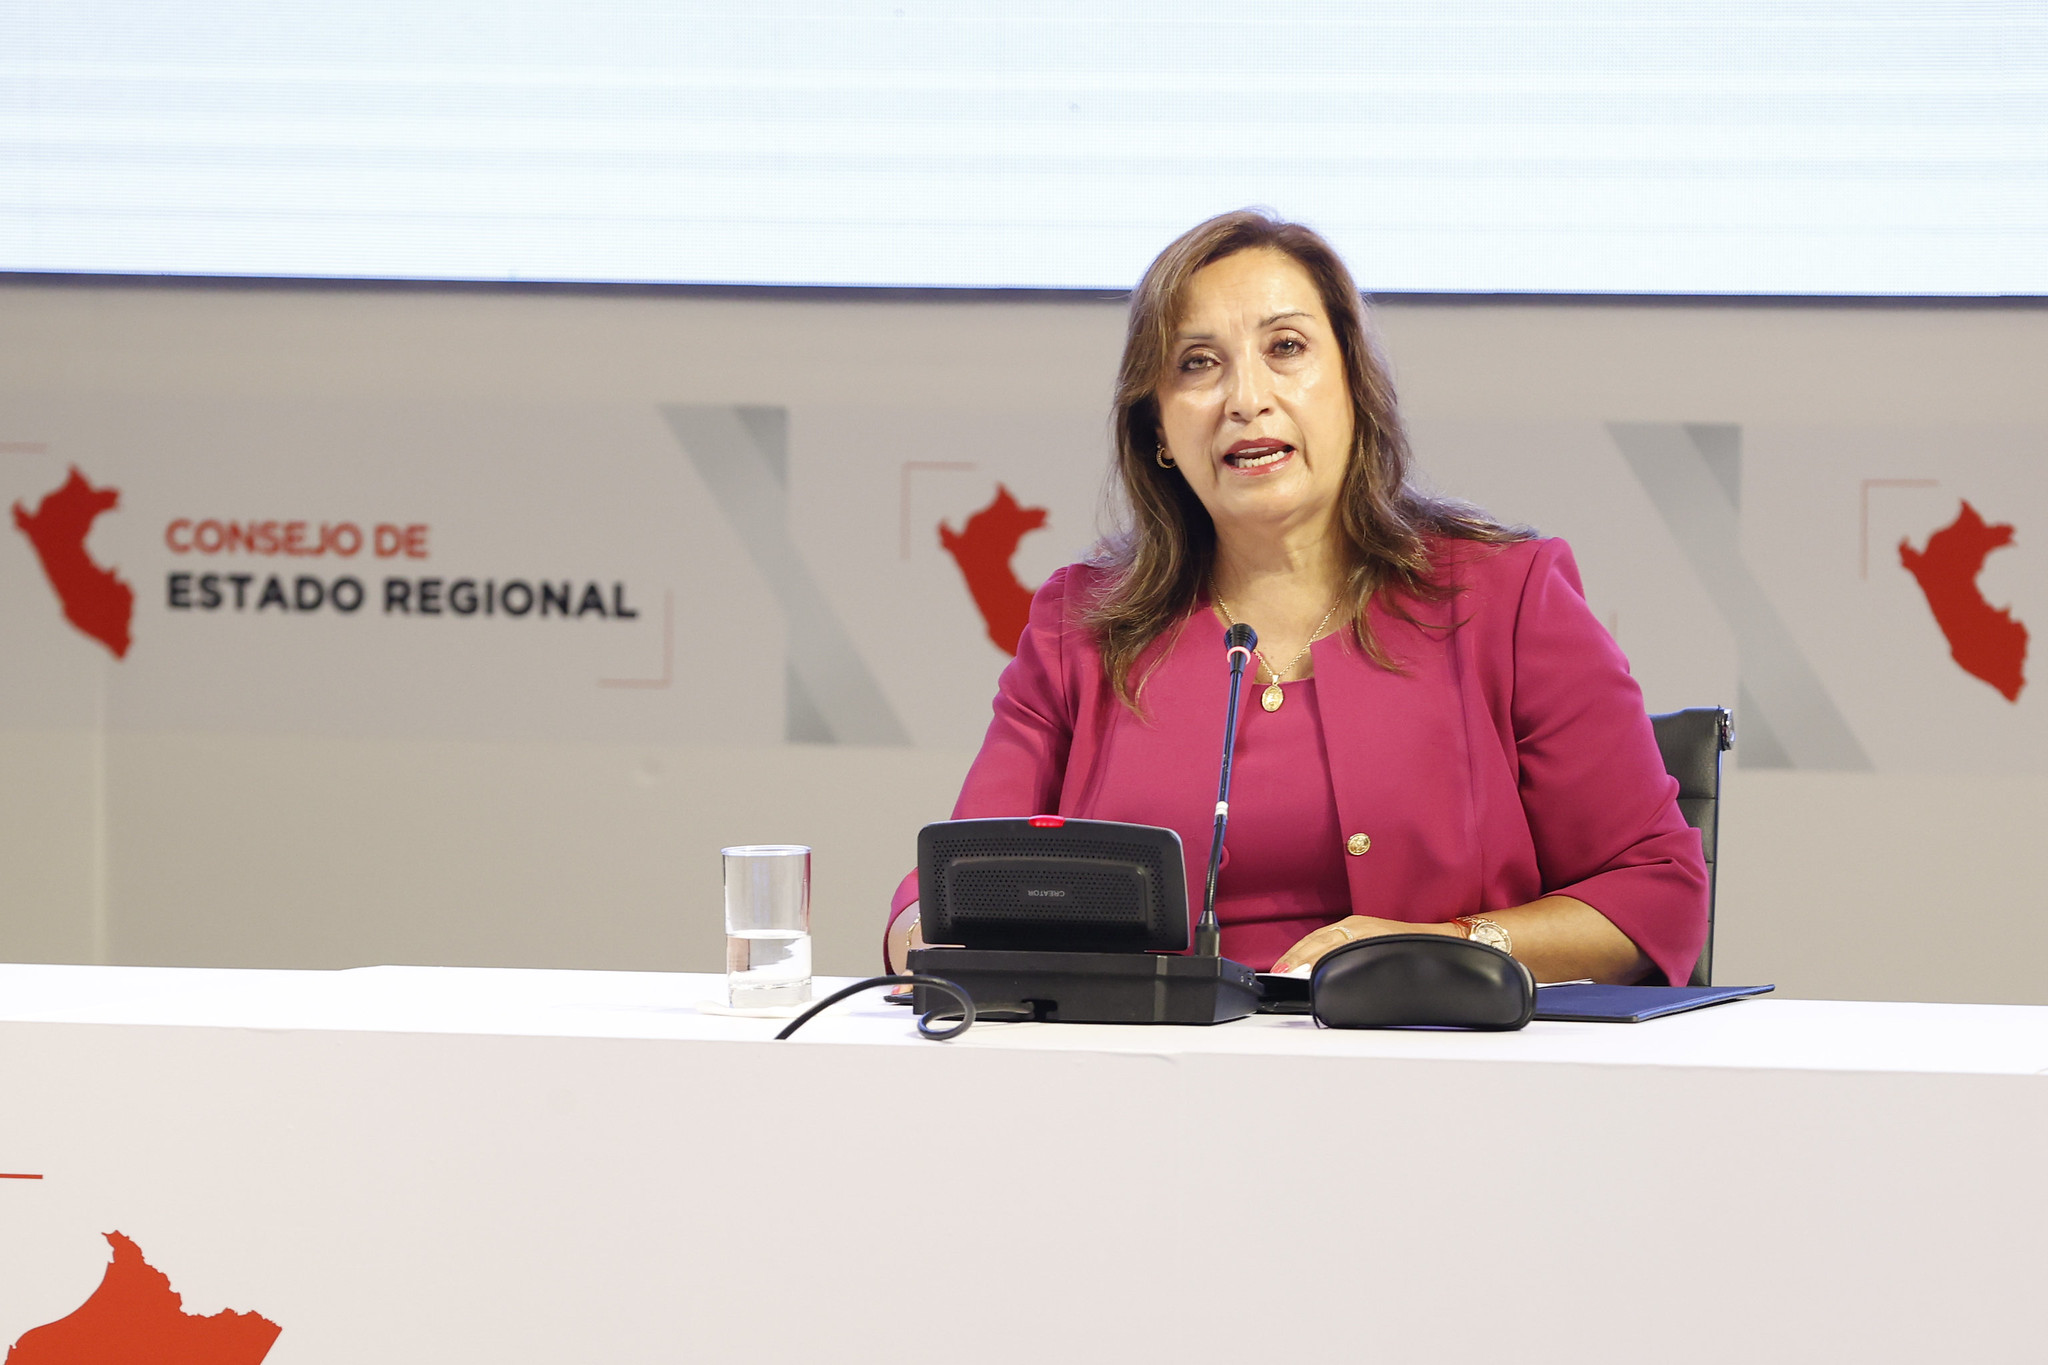 Presidenta Boluarte: Consejo de Estado Regional permitirá resolver problemas que aquejan a la población más vulnerable